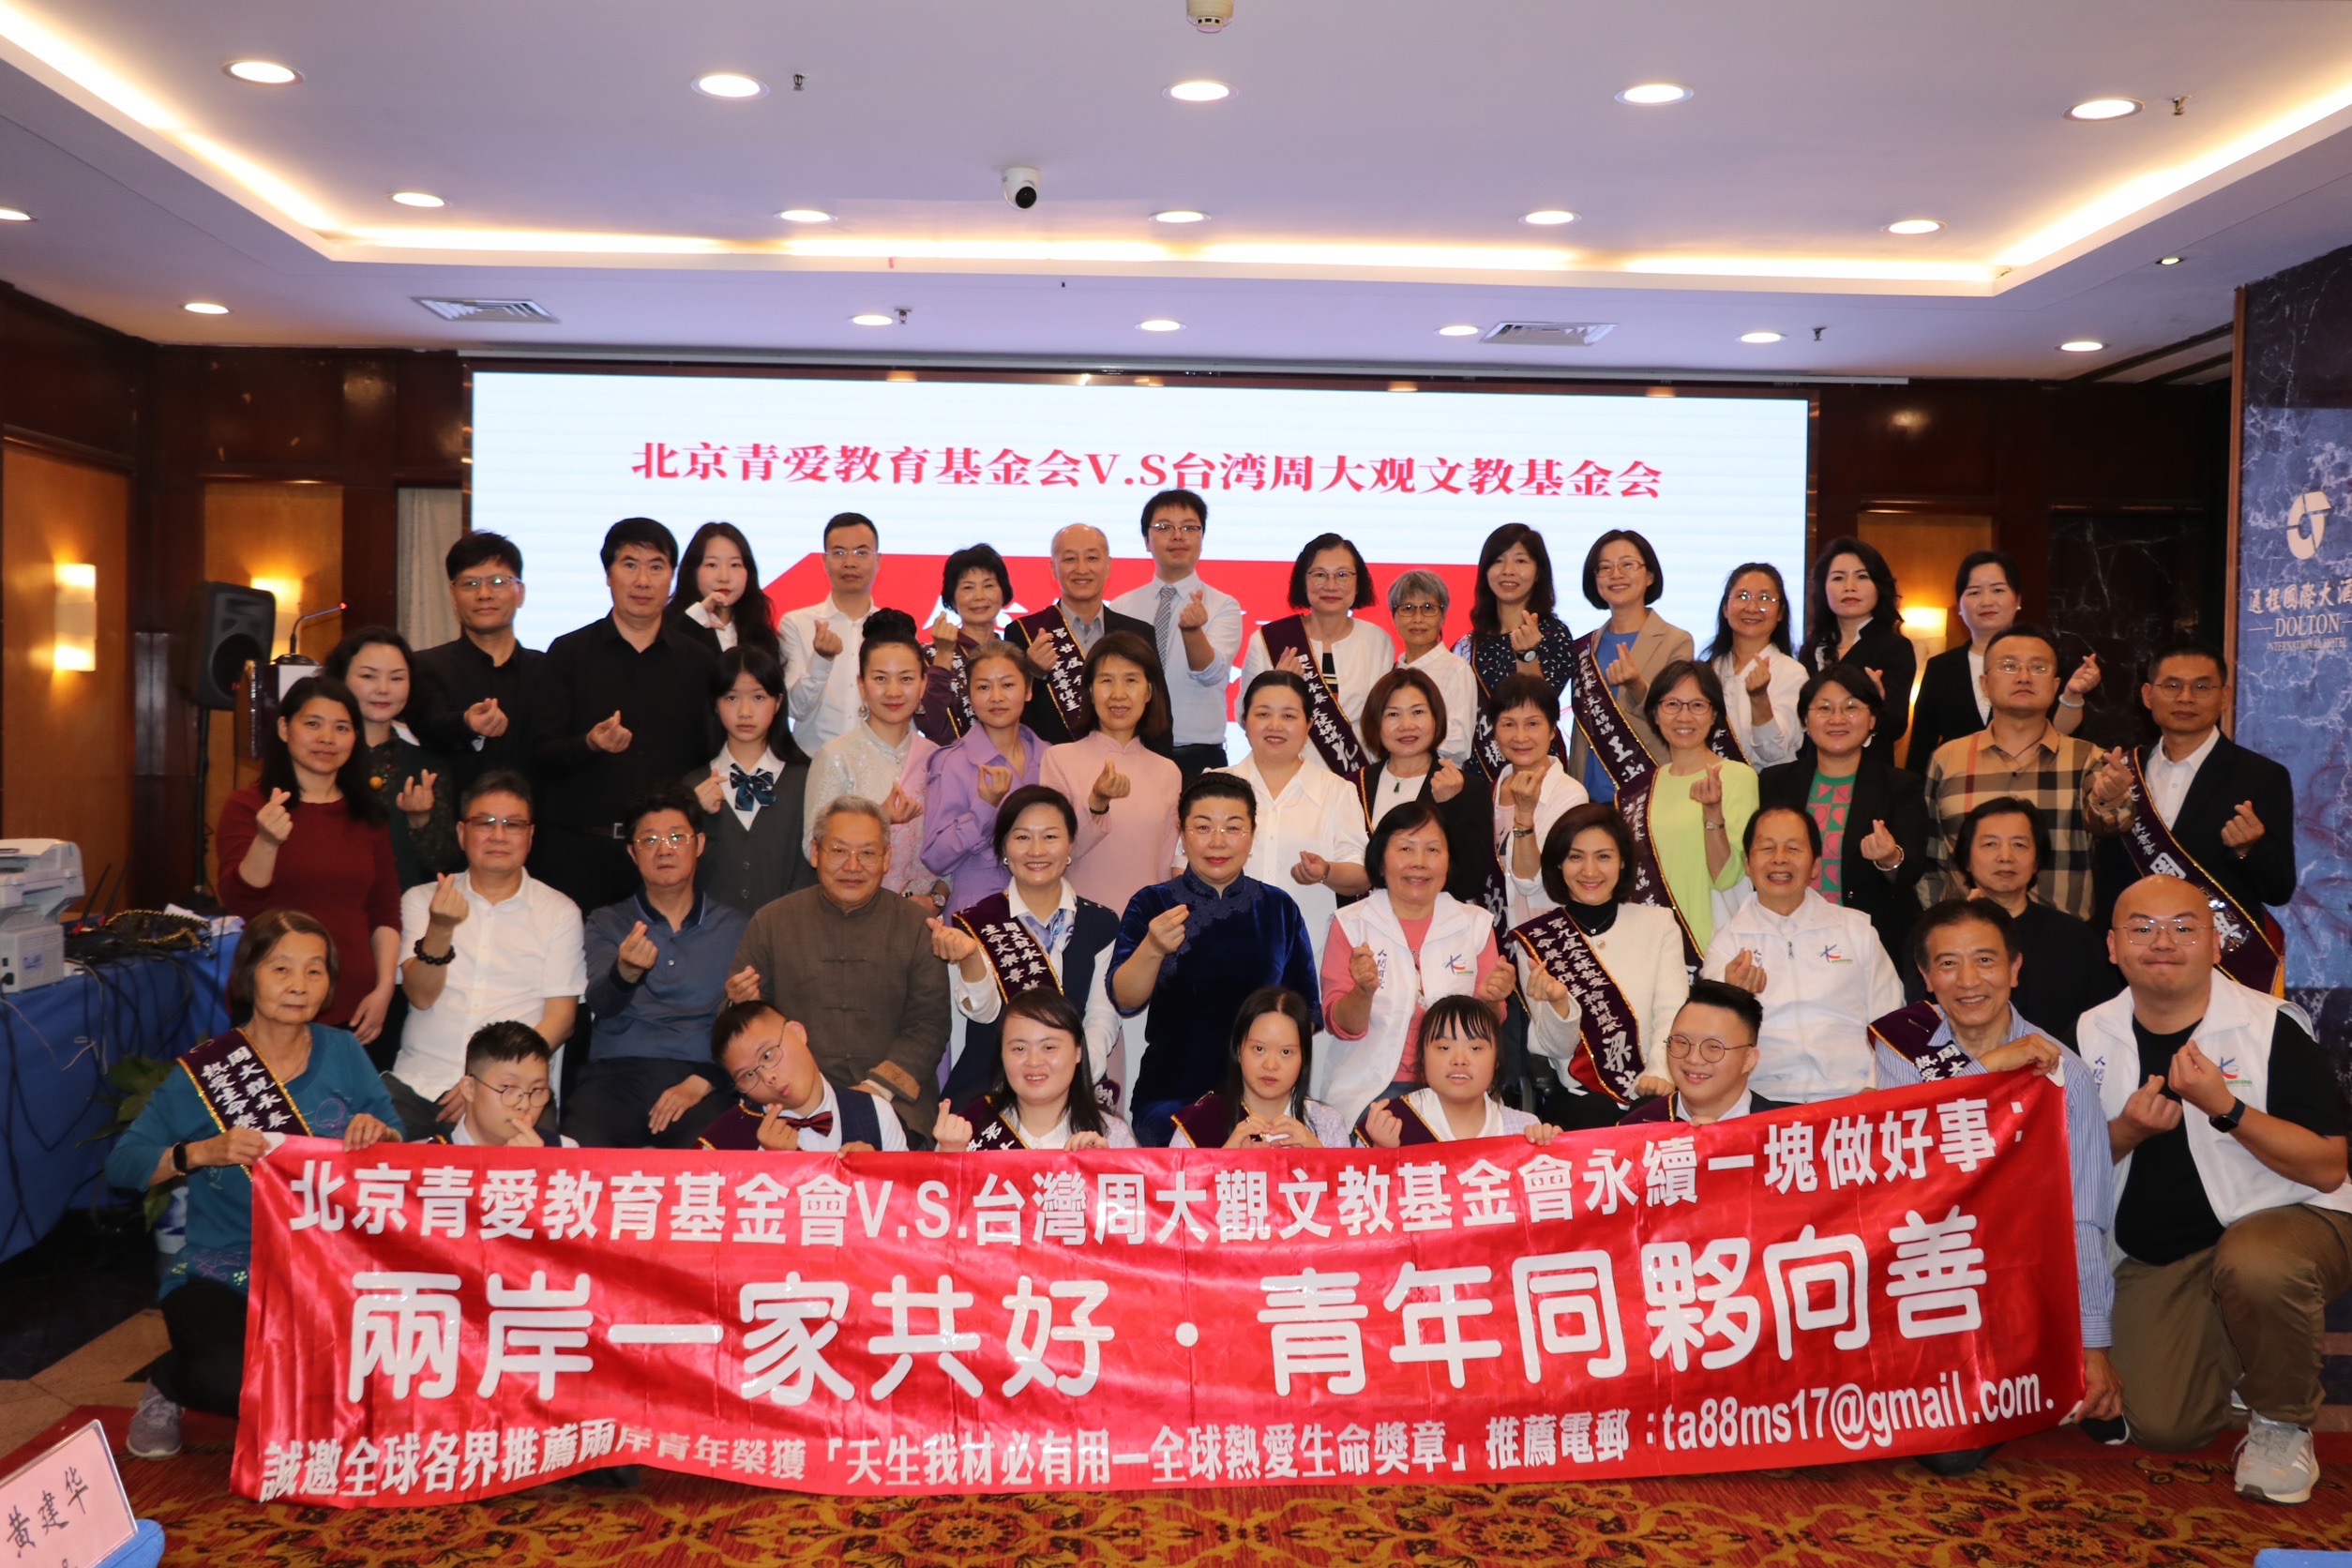  周大觀文教基金會與北京青愛教育基金會締結姊妹會一起行善。圖/周大觀文教基金會提供